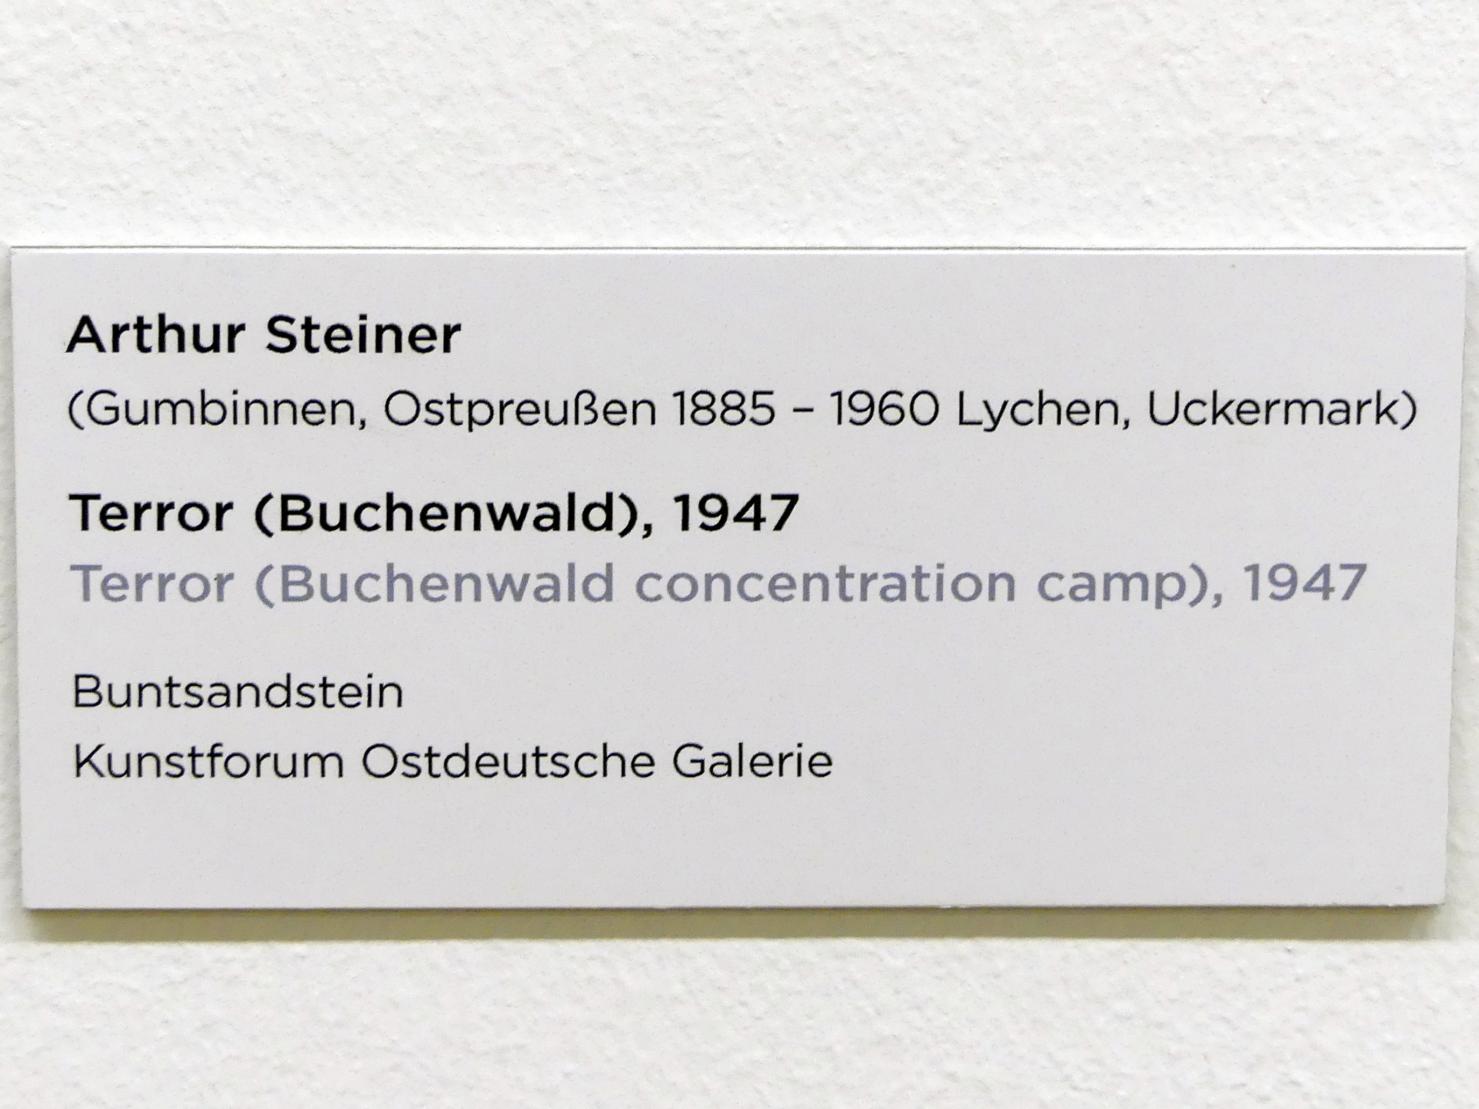 Arthur Steiner (1947), Terror (Buchenwald), Regensburg, Ostdeutsche Galerie, Saal 1, 1947, Bild 3/3